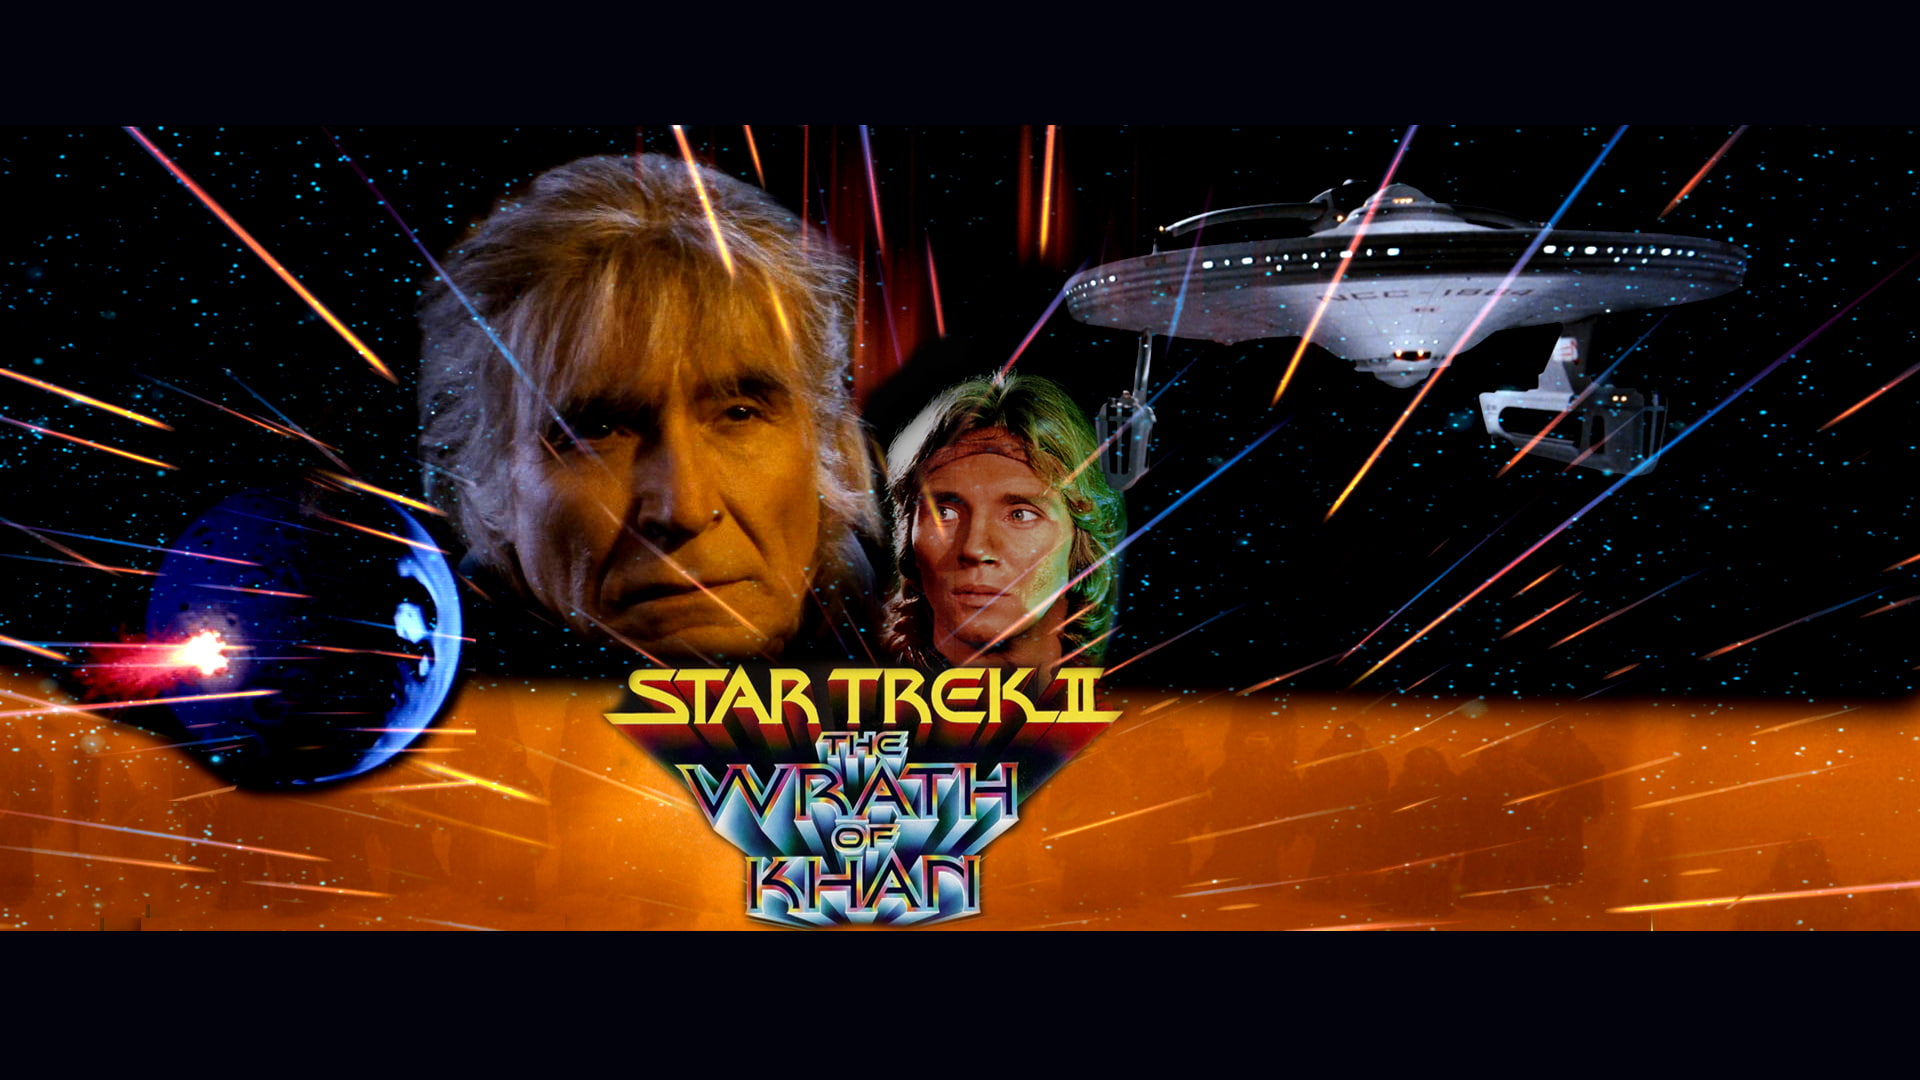 Star Trek, Star Trek II: The Wrath of Khan